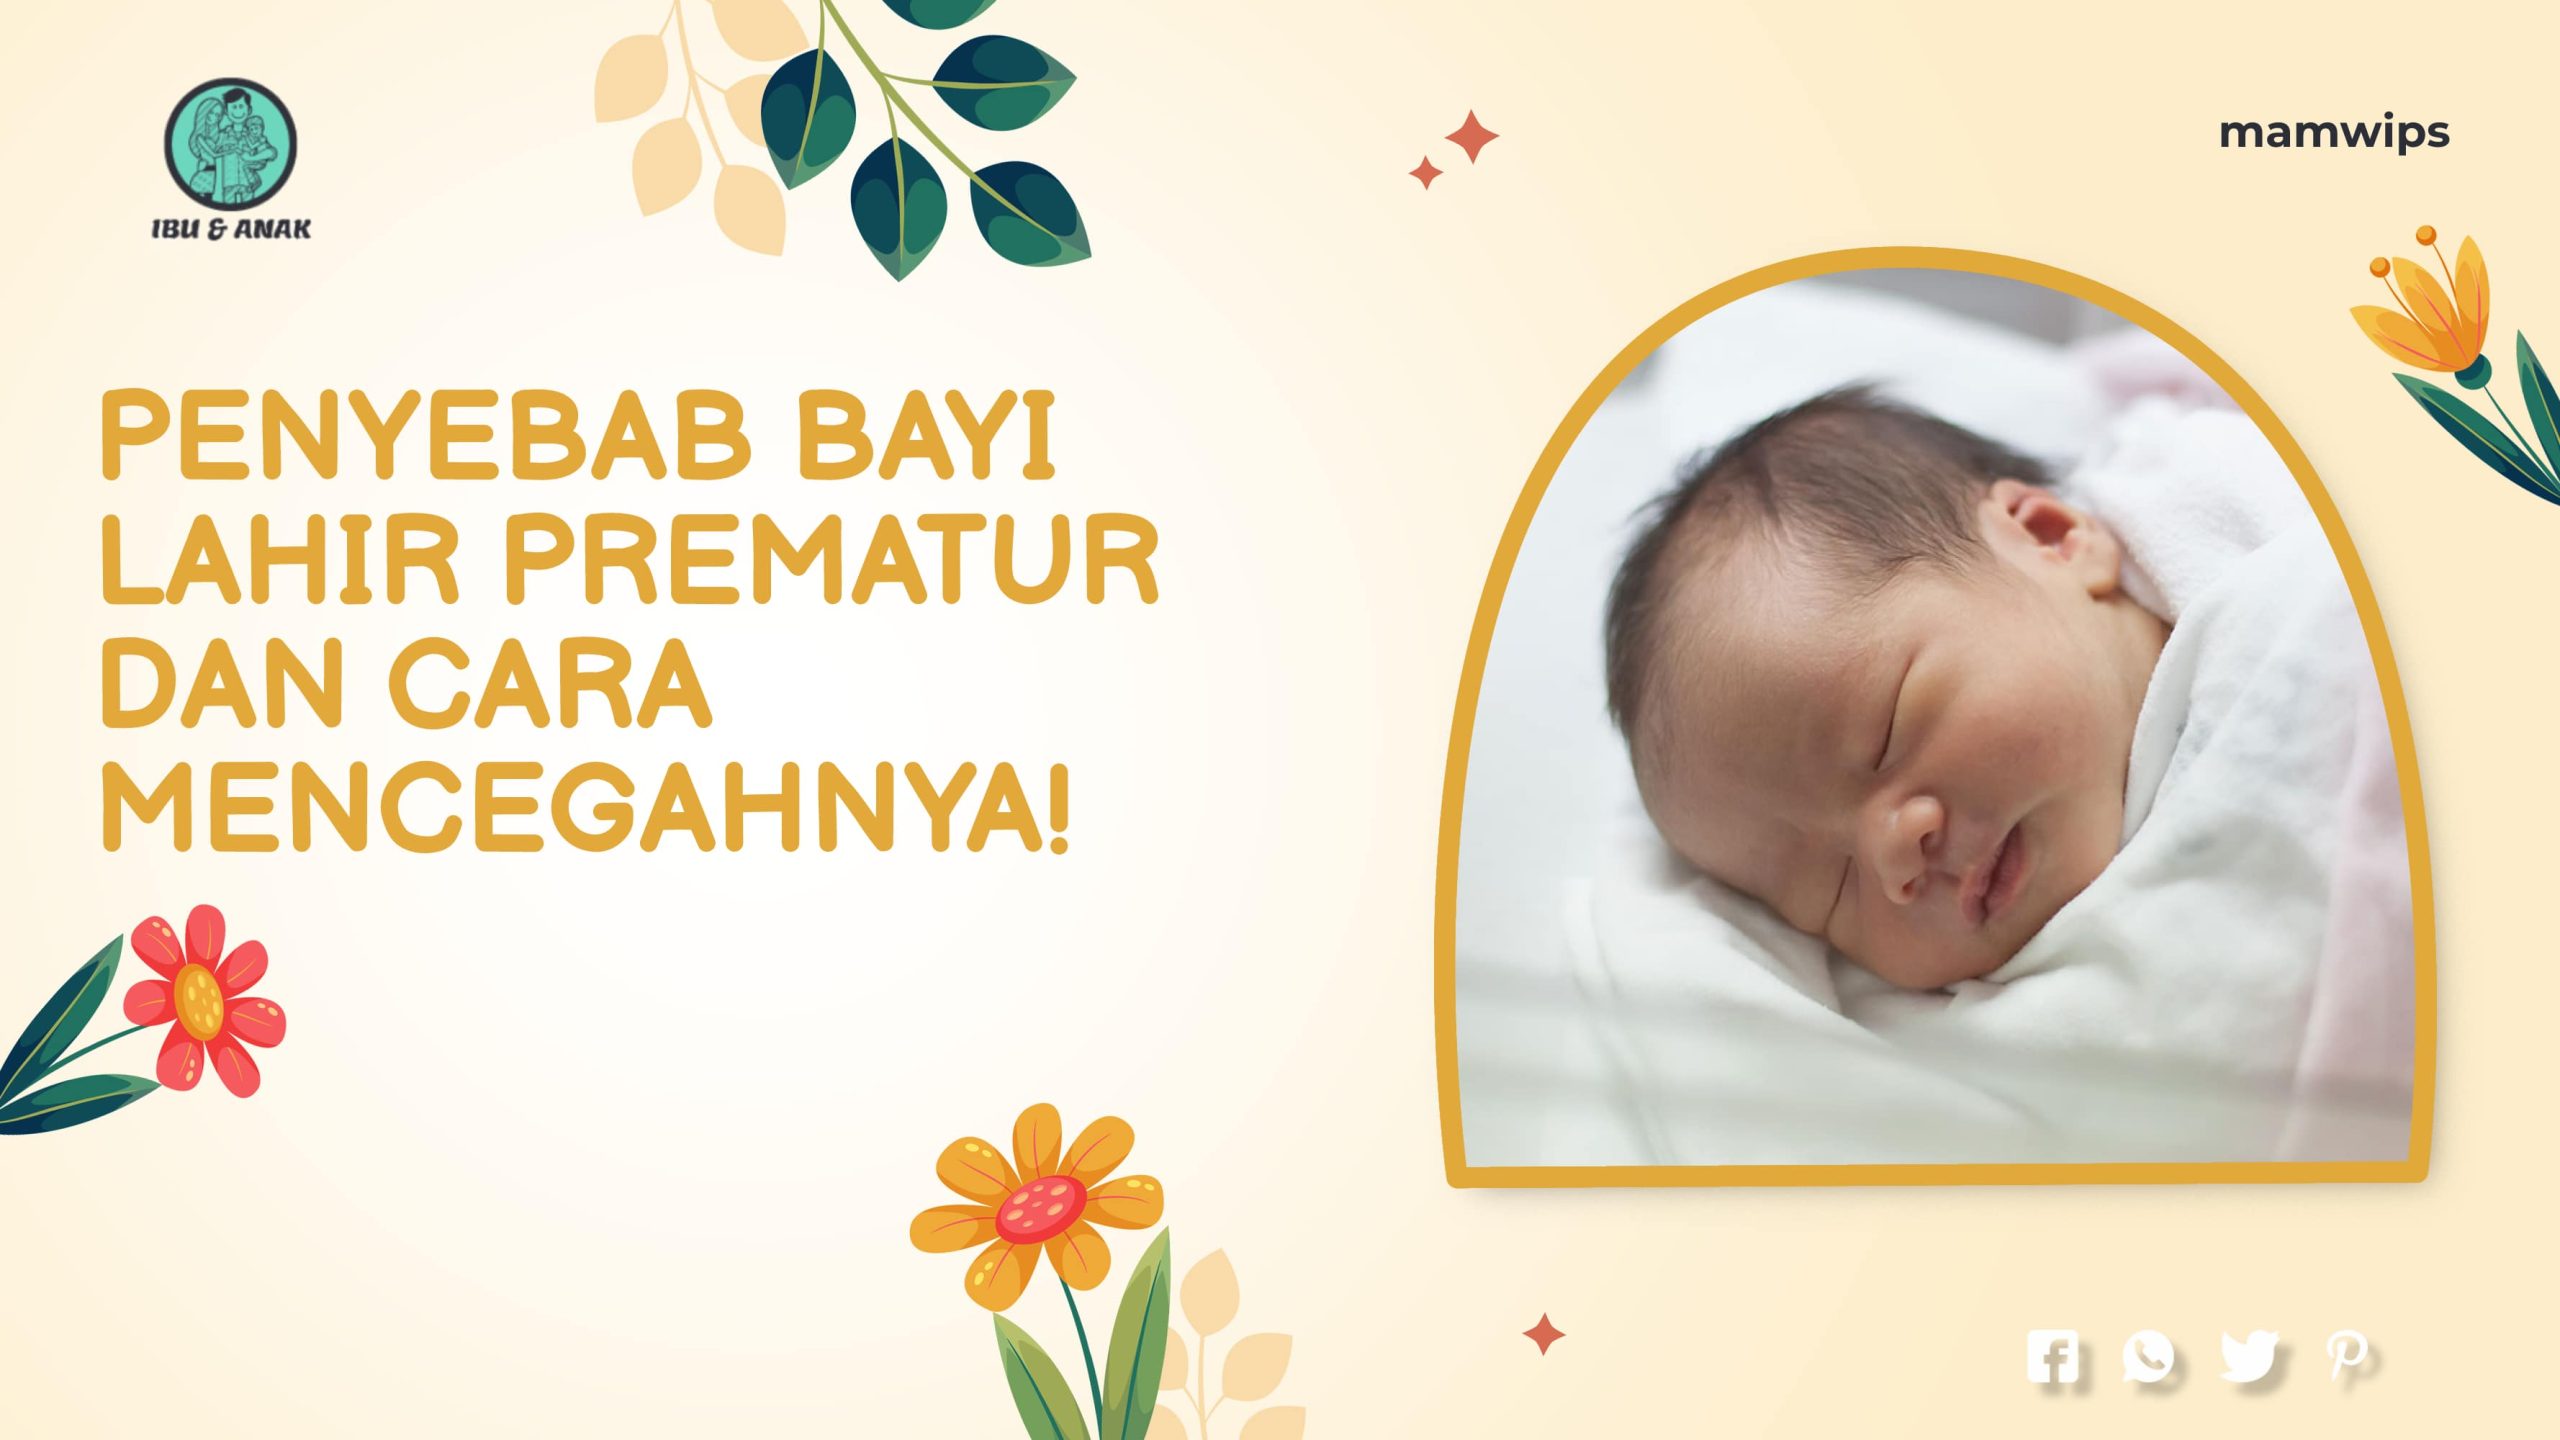 Penyebab Bayi Lahir Prematur dan Cara Mencegahnya!